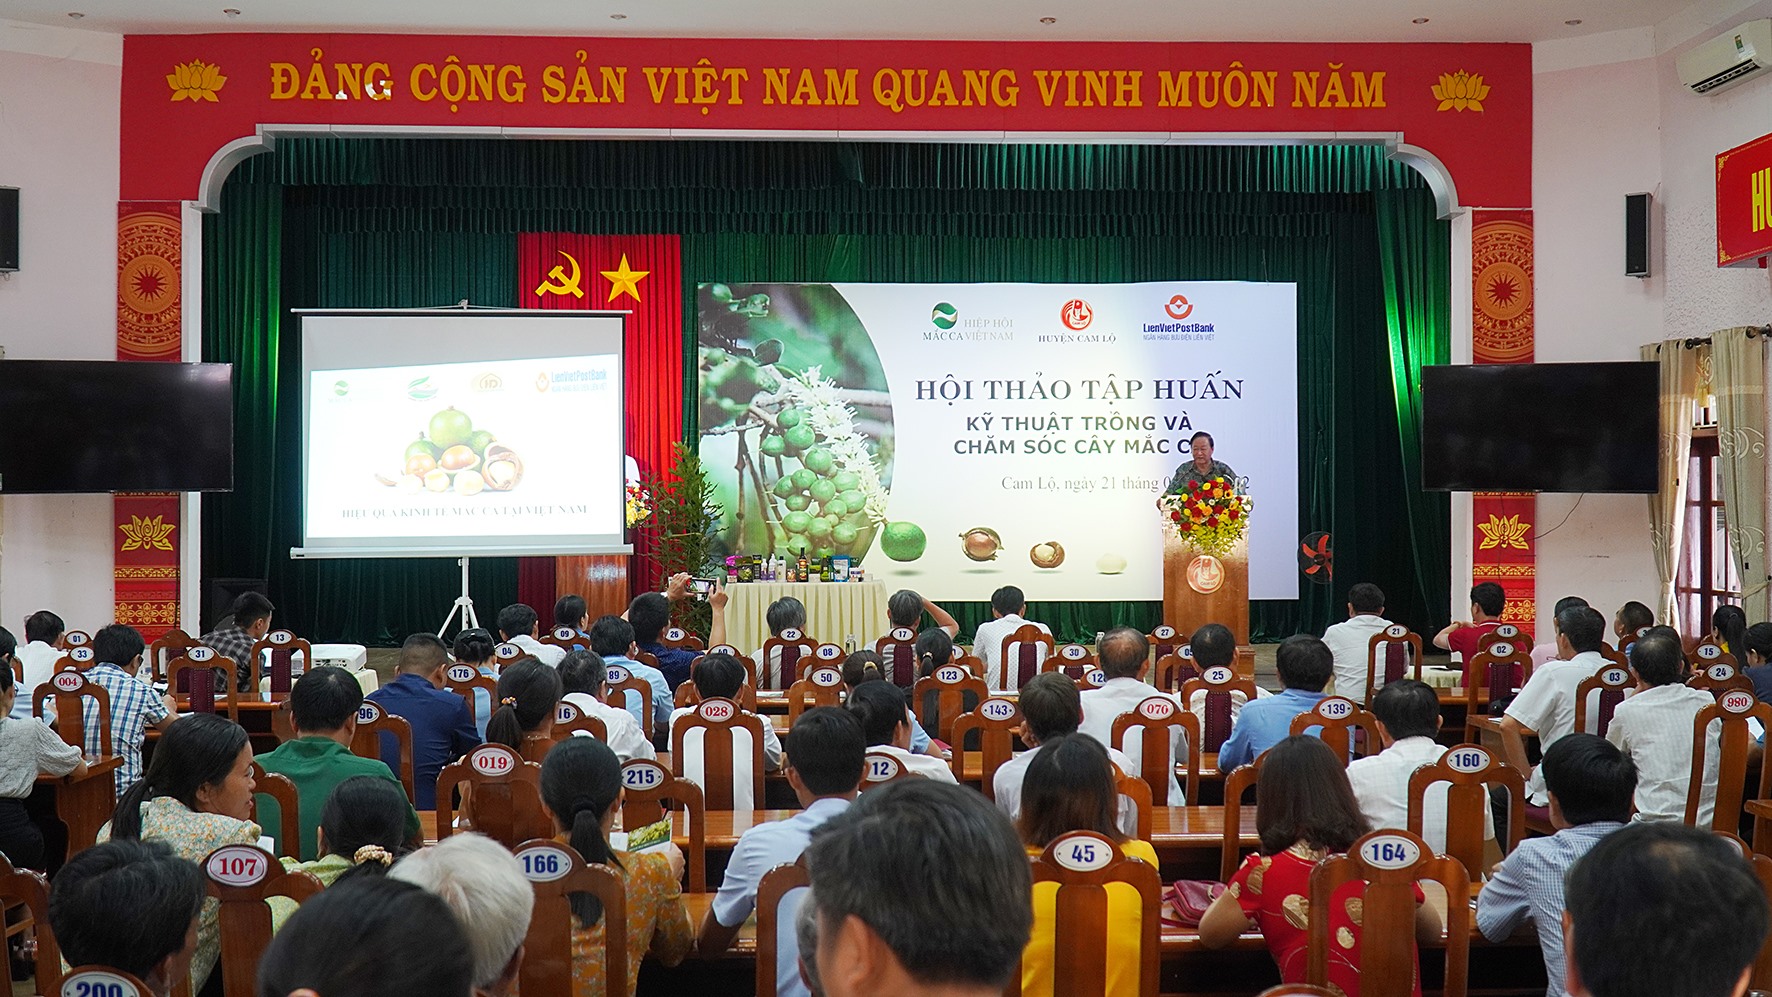 Giáo sư Nguyễn Lân Hùng, Phó Chủ tịch Hiệp hội Mắc ca Việt Nam hướng dẫn kỹ thuật trồng và chăm sóc cây mắc ca -Ảnh: Anh Vũ